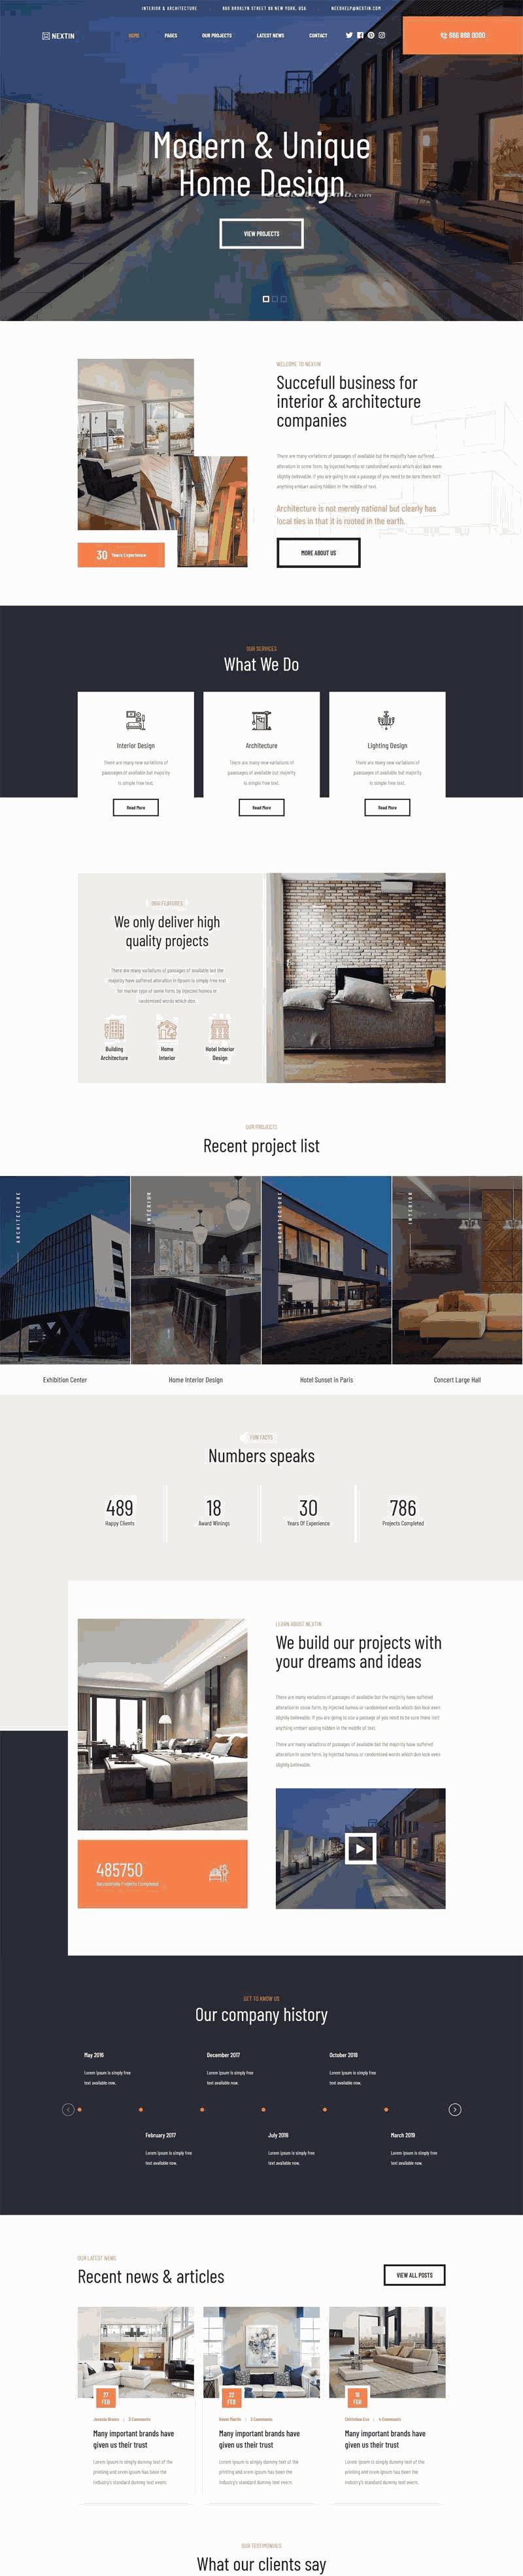 建筑室内设计公司网站自适应Wordpress模板（带手机版）效果图